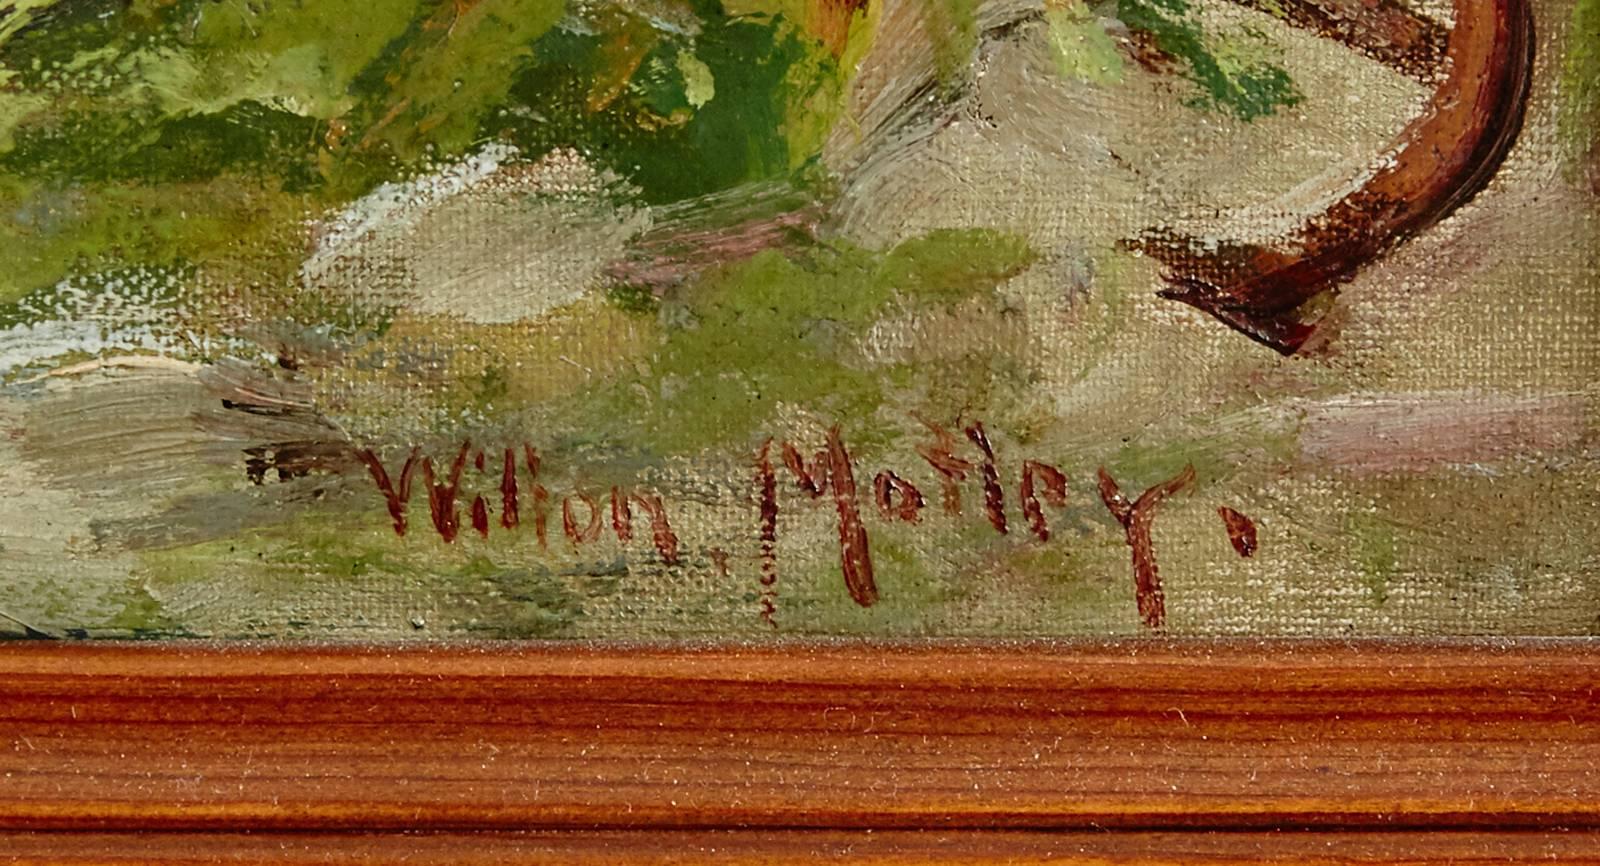 Wilton Motley Küstenmotiv, signiert, Öl auf Leinwand. Abmessungen: 50 x 75 cm.